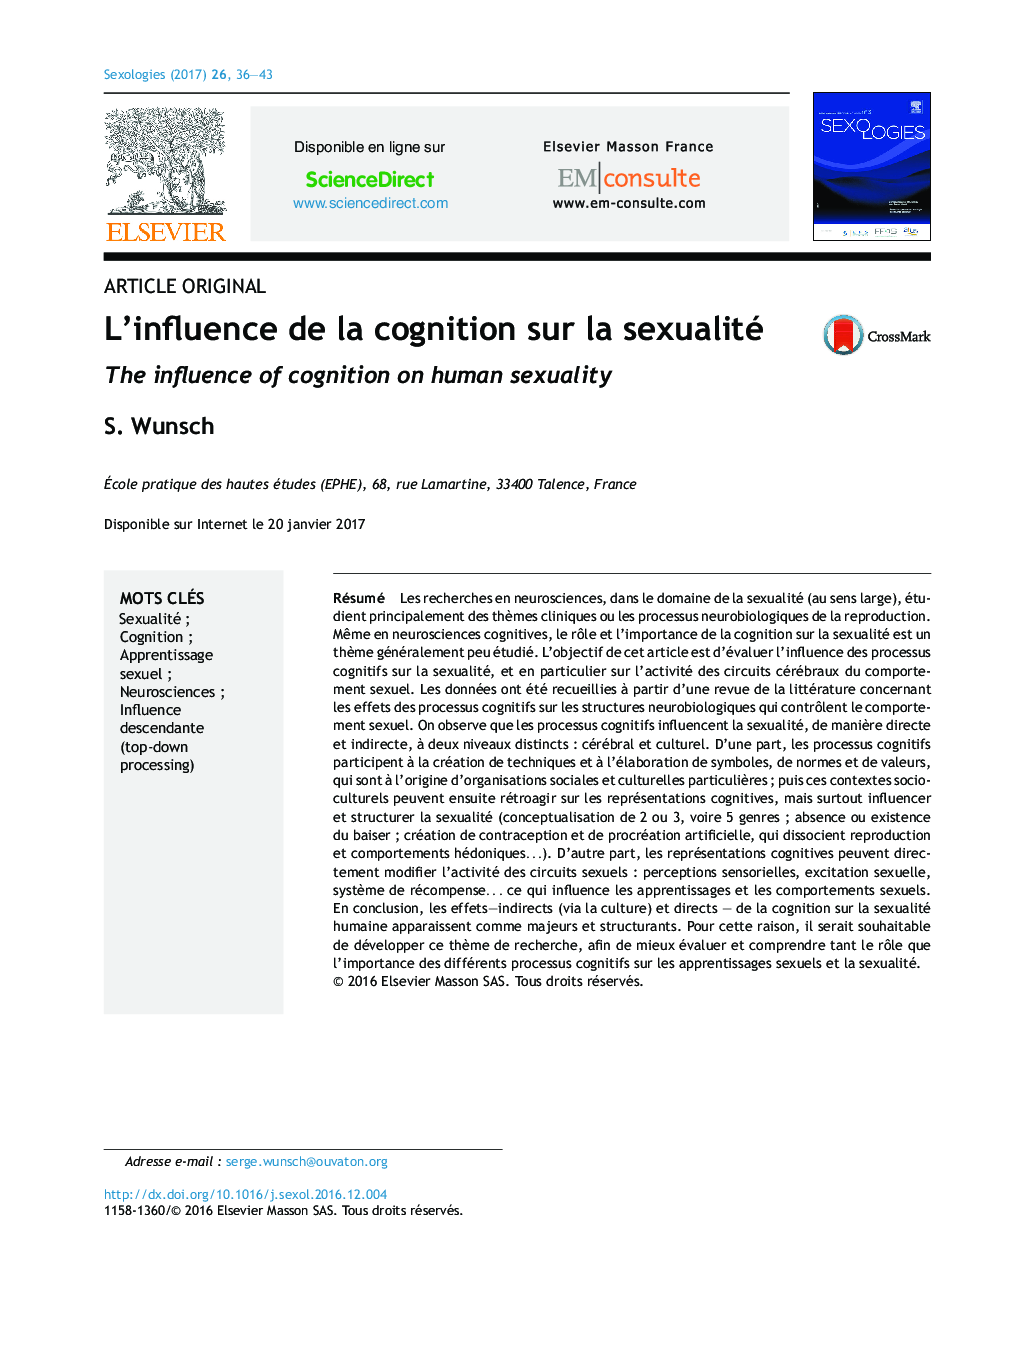 Article originalL'influence de la cognition sur la sexualitéThe influence of cognition on human sexuality